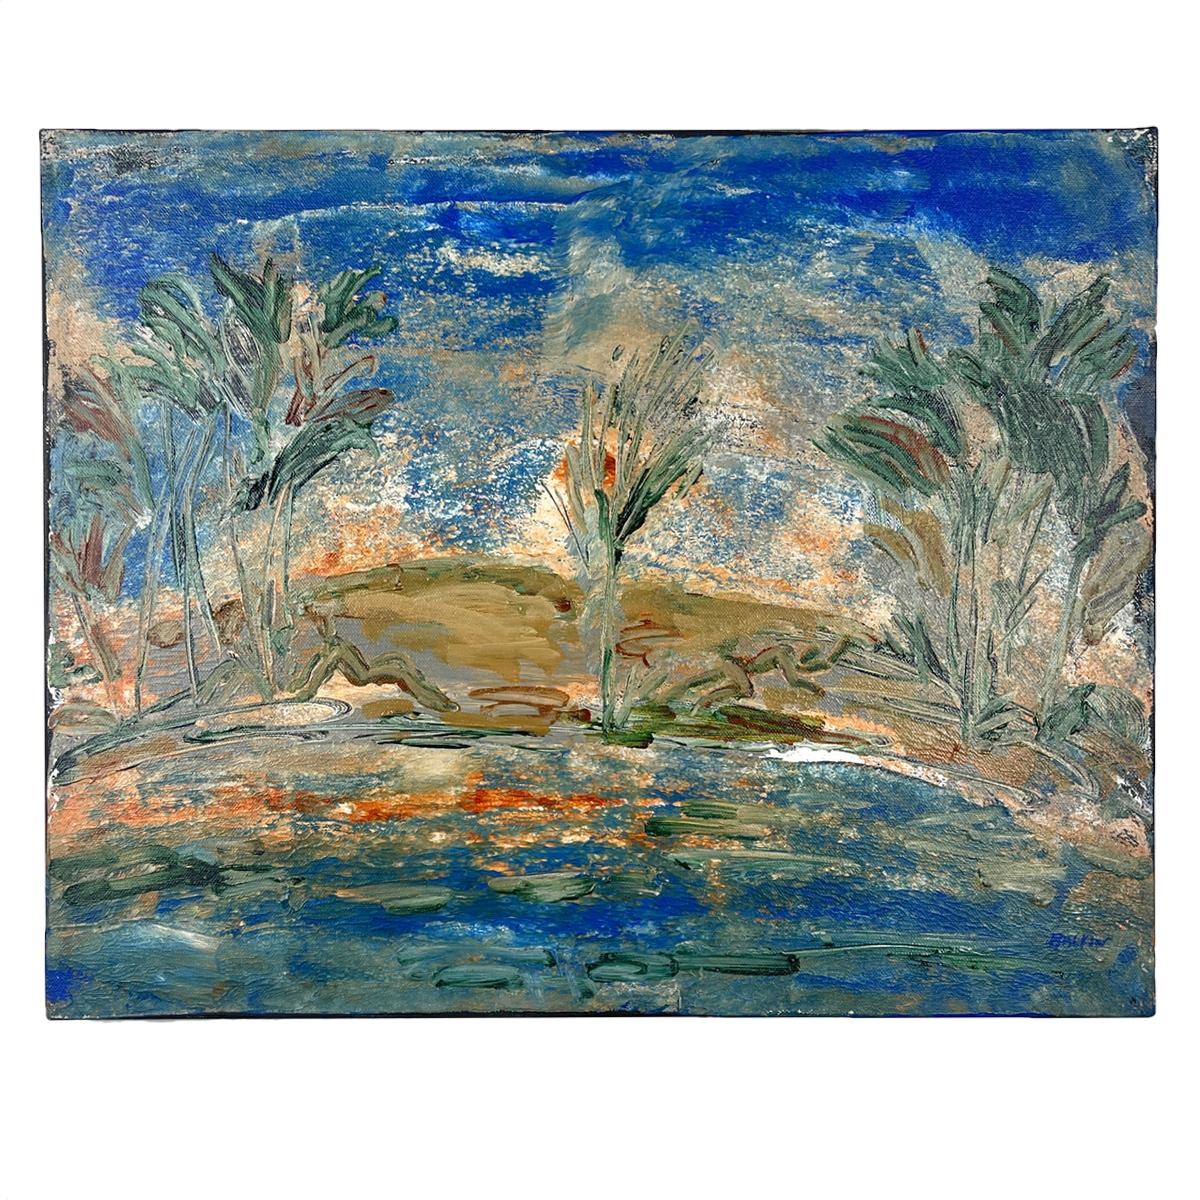 Steve Balkin (1938-2023)
Cette peinture a été achetée à la succession de Balkin. Elle provient de son domicile au nord de l'État de New York. Elle est datée de 8/2007 et signée au recto et au verso. Cette peinture illustre le style "expressionniste